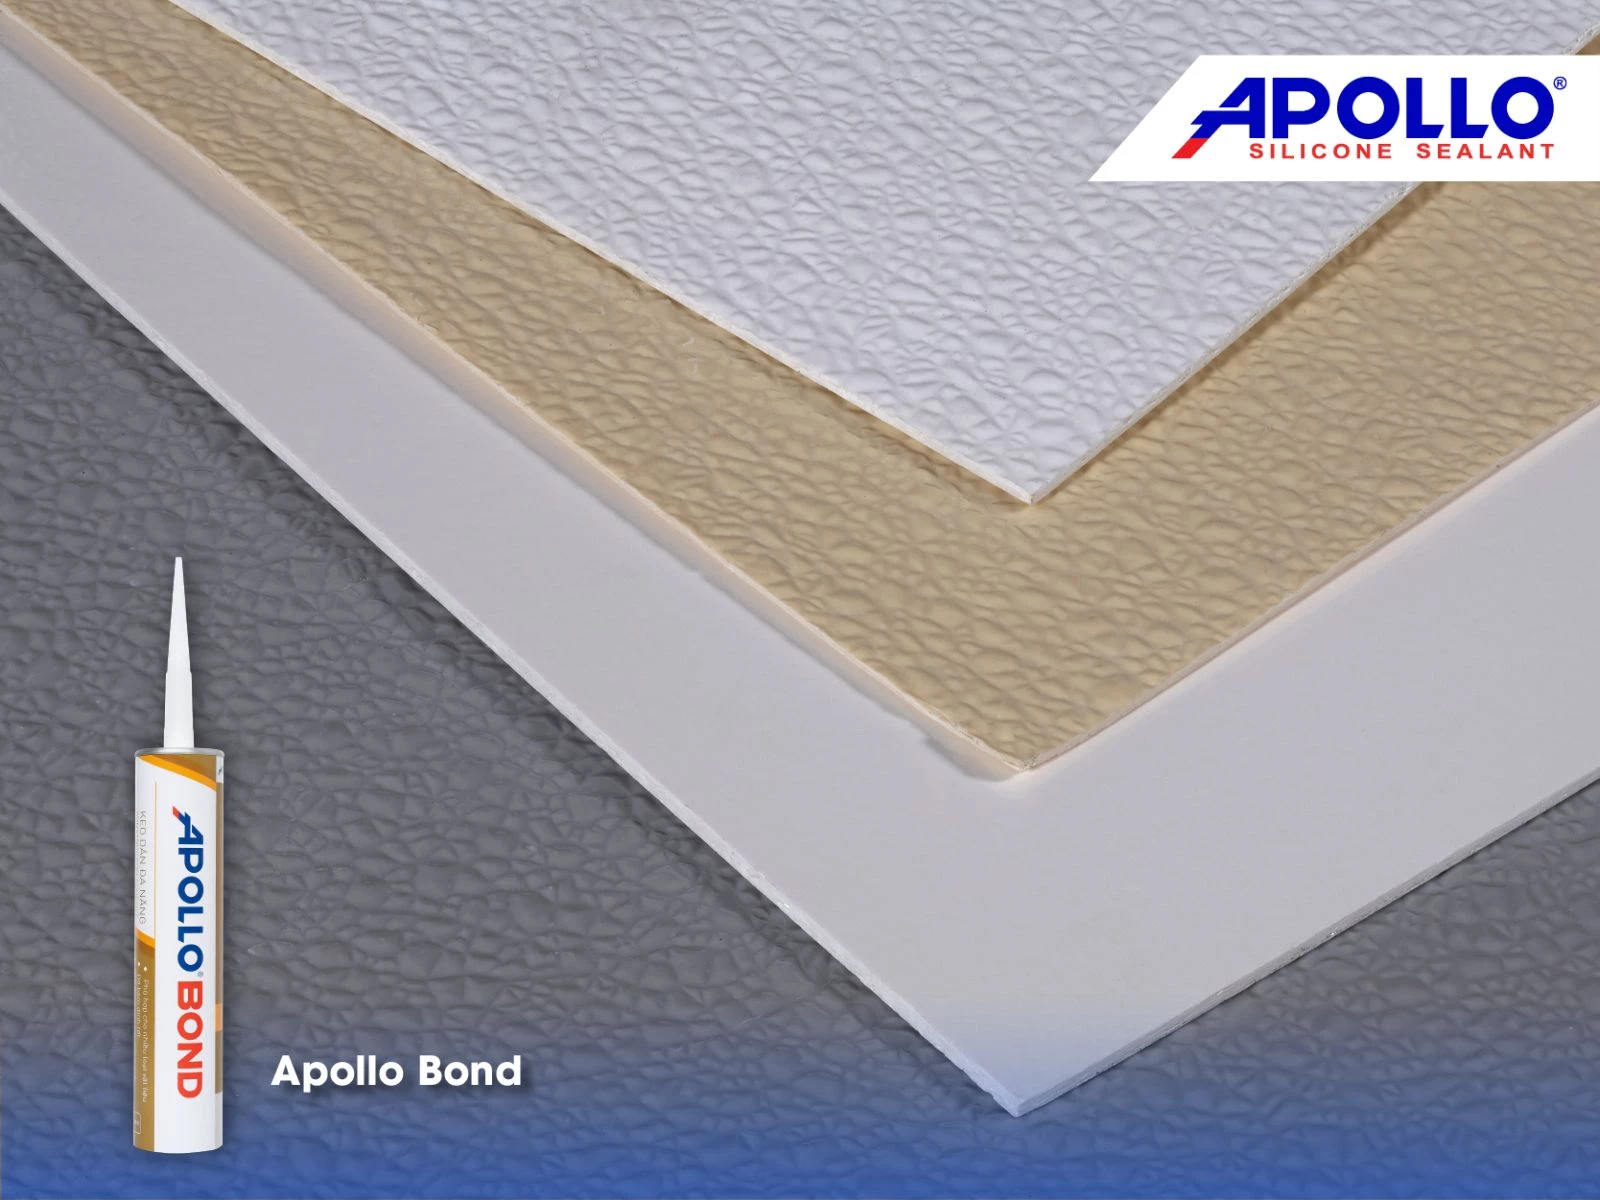 Apollo Bond ứng dụng trên đa dạng loại vật liệu, có khả năng kết dính hoàn hảo